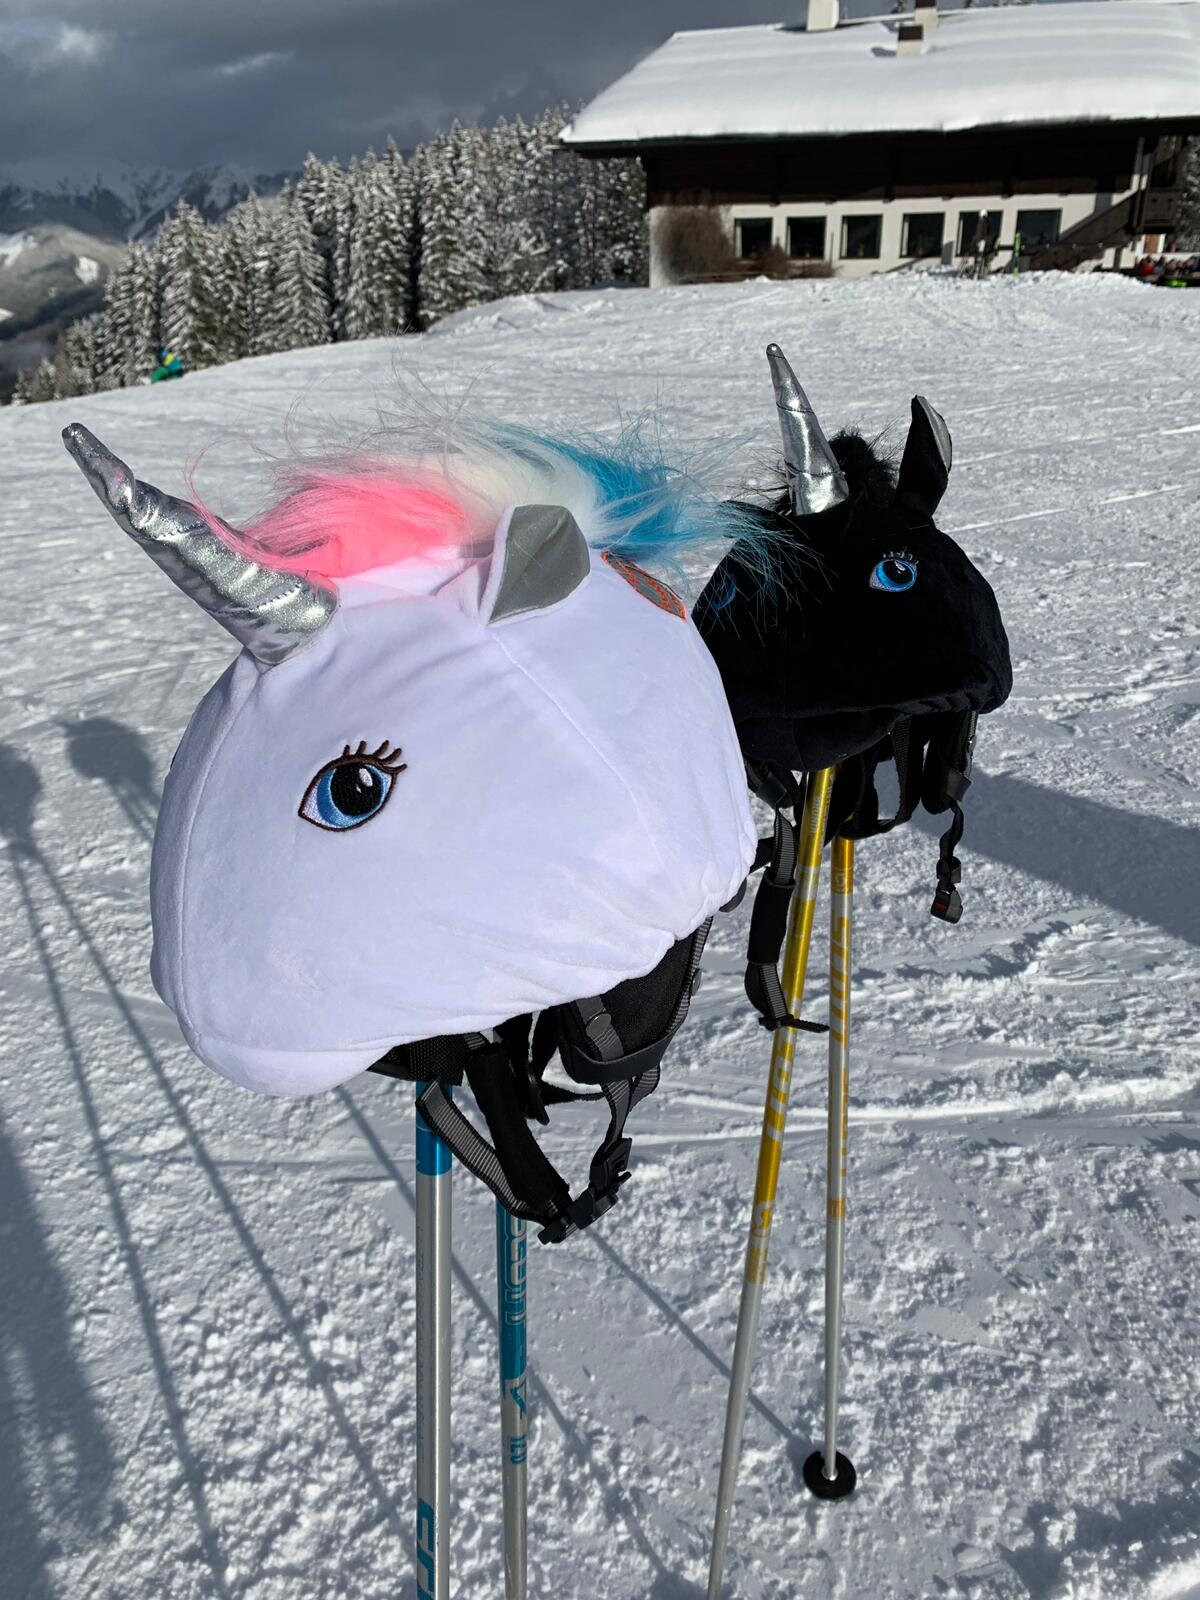 Las 6 mejores fundas casco esqui unicornio 